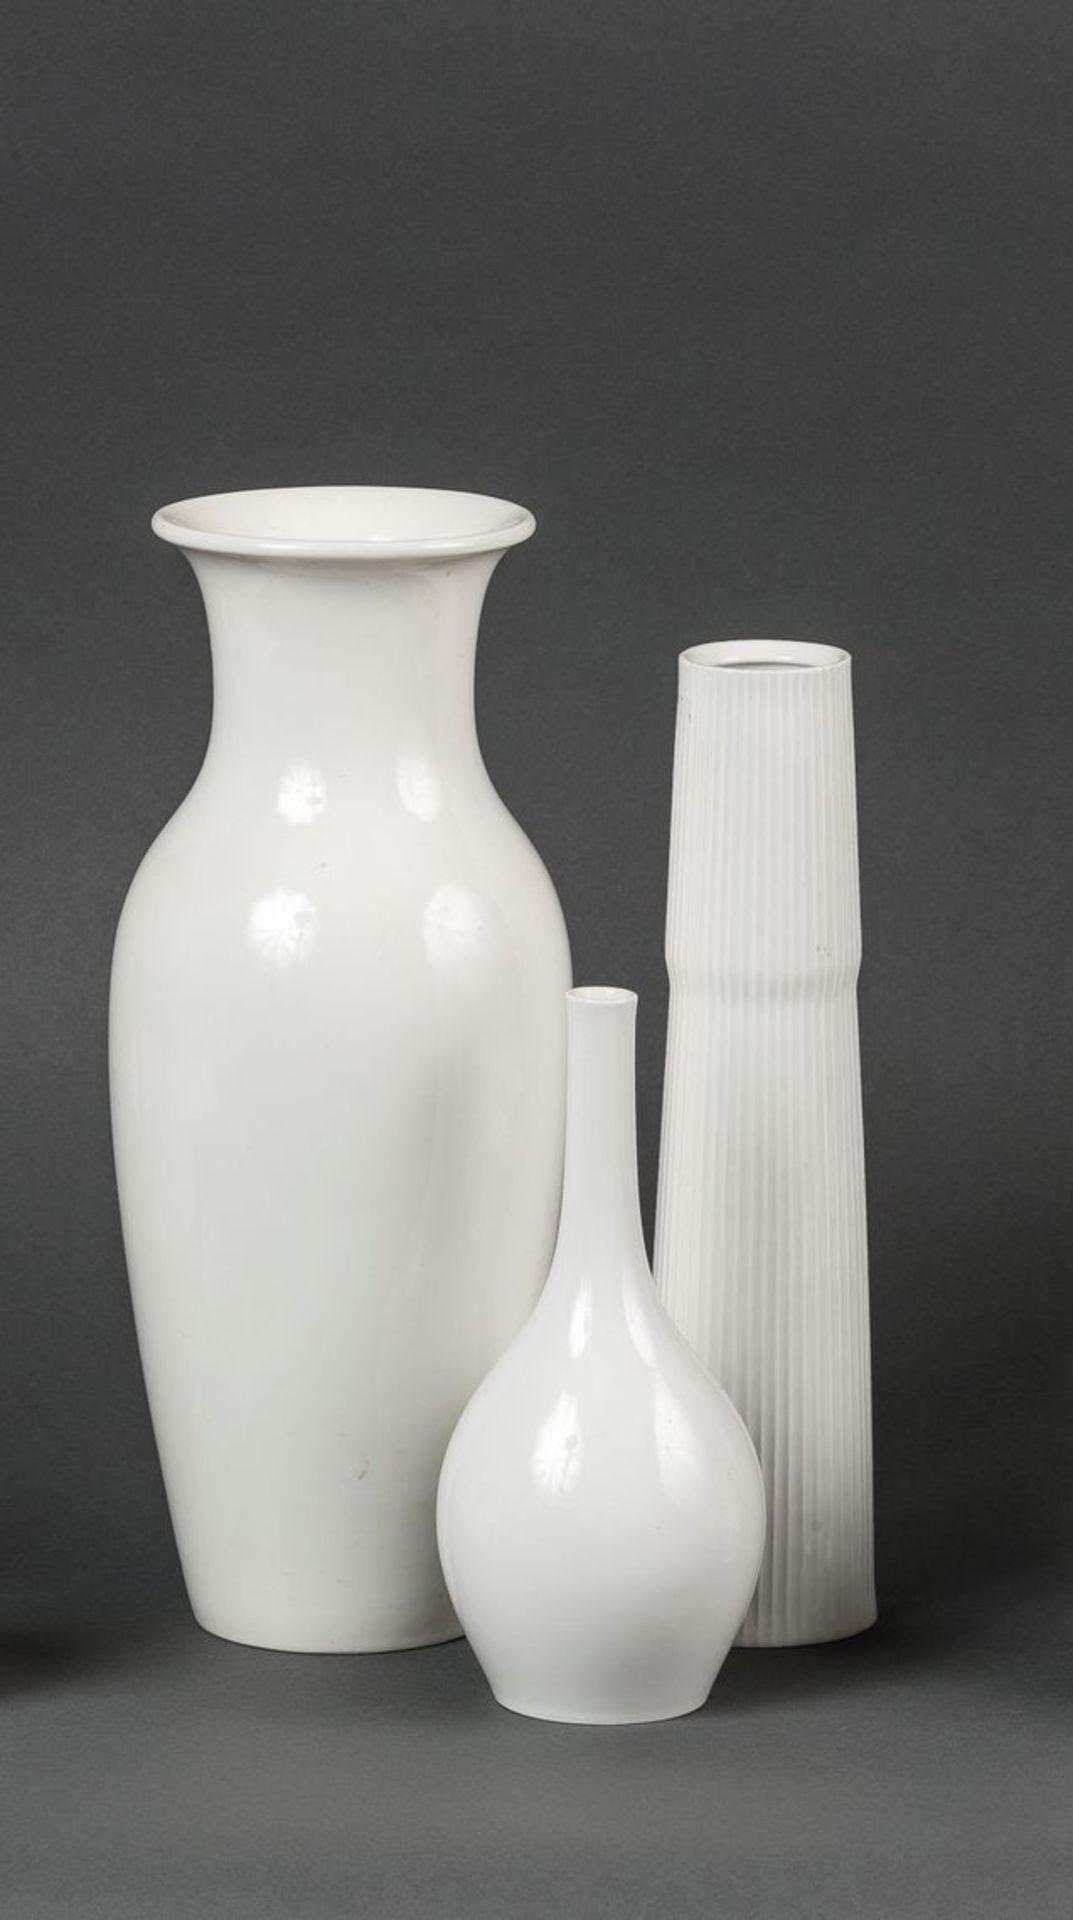 Drei VasenWeißporzellan. Eine große Balustervase mit glatter Wandung, eine Stangenvase mit gerippter